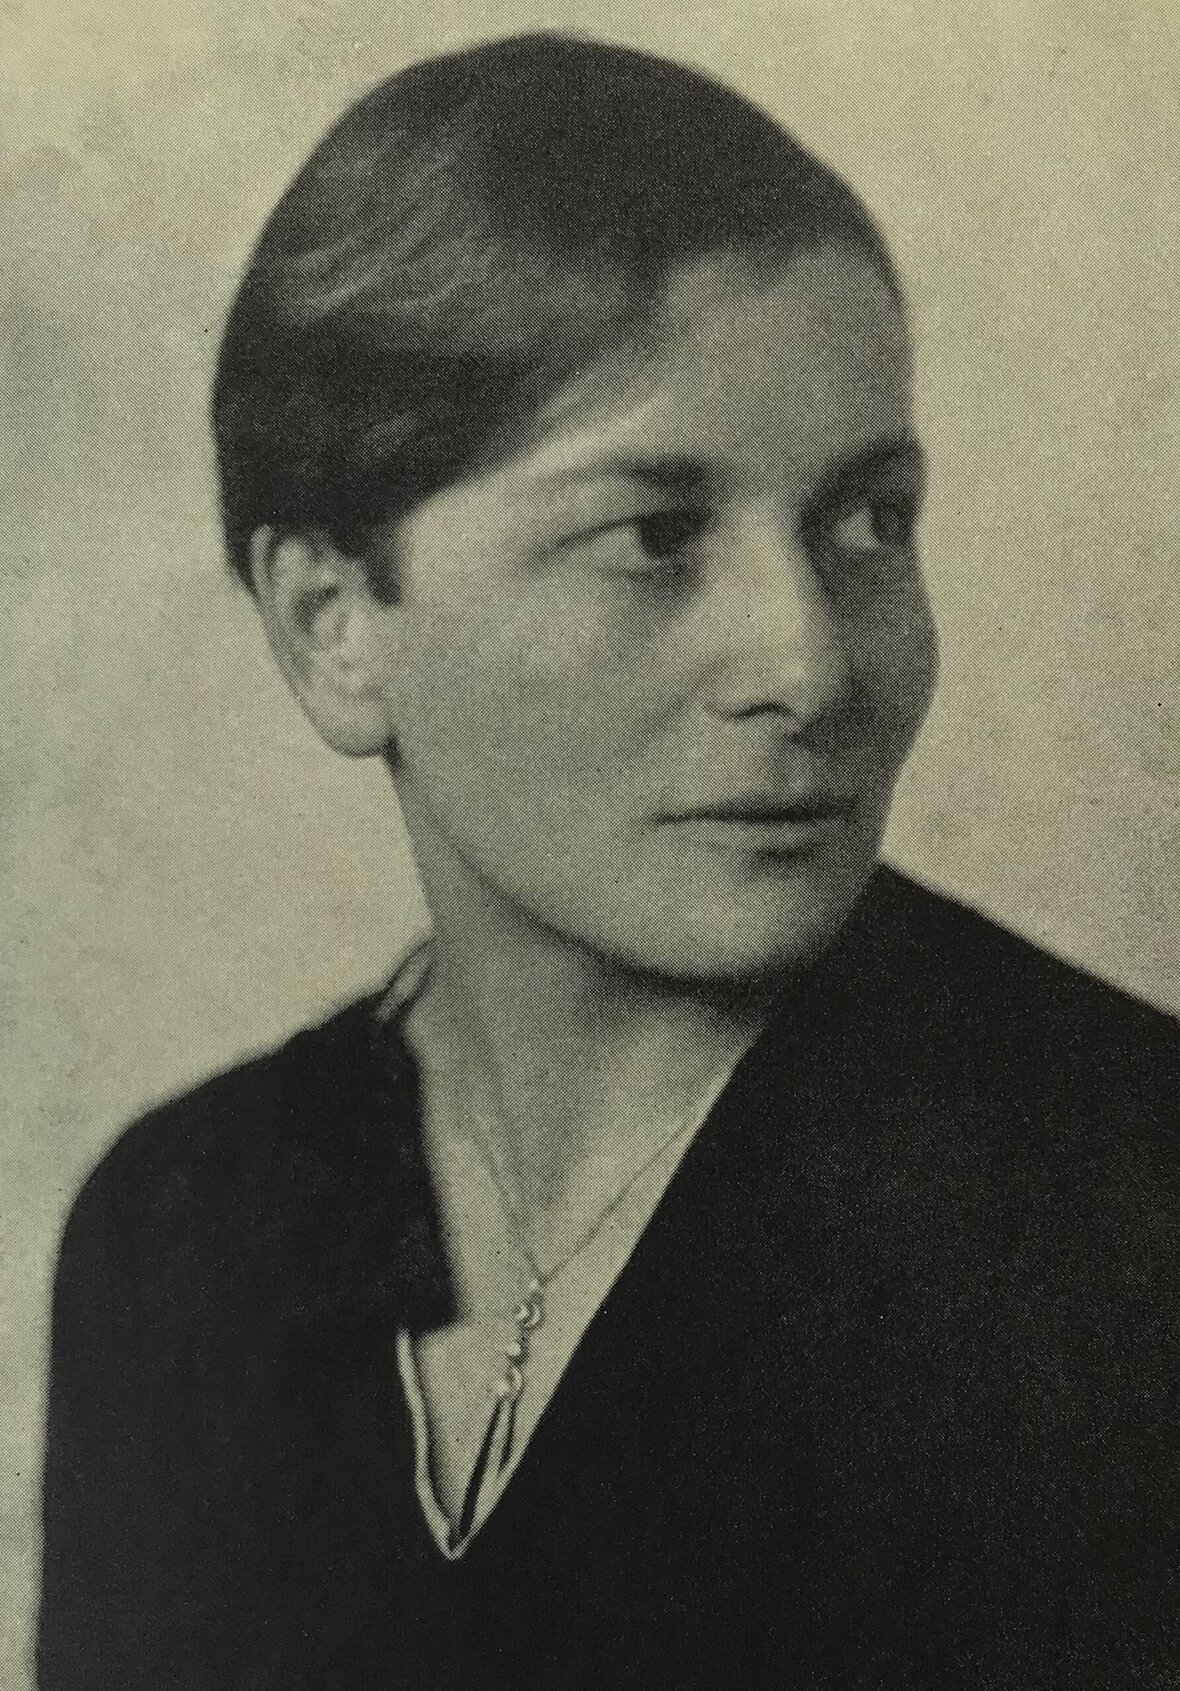 Ein schwarz weiß Portrait von Eva Ehrenberg. Sie schaut rechts an der Kamera vorbei, man sieht vor allem den Oberkörper und den Kopf, sie hat kurze Haare und trägt ein Hemd.